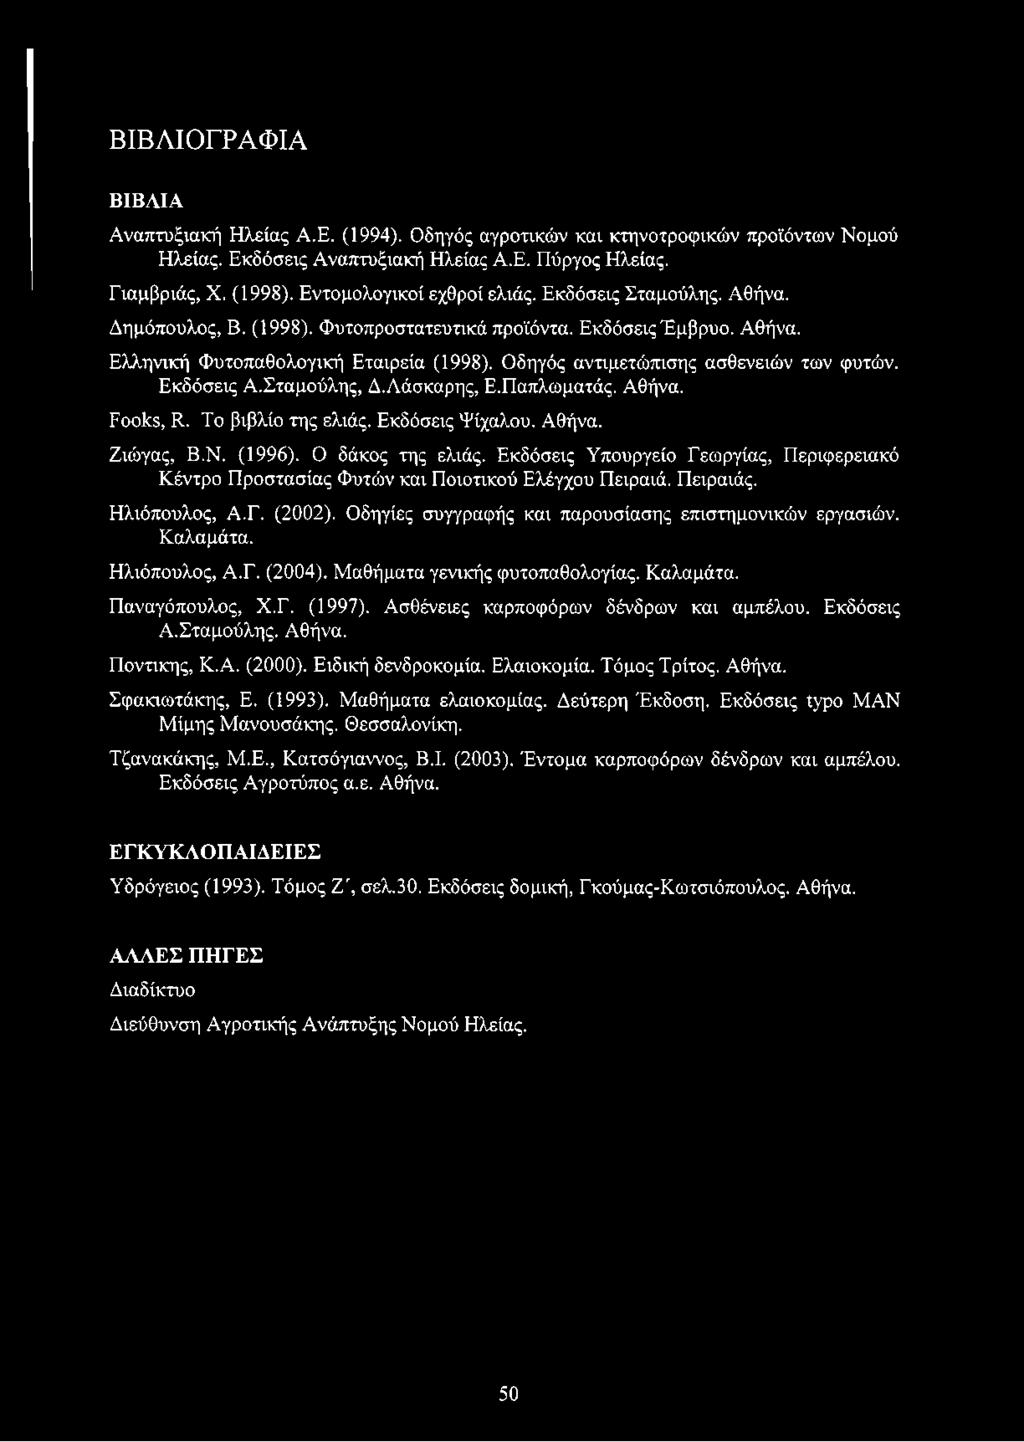 Οδηγός αντιμετώπισης ασθενειών των φυτών. Εκδόσεις Α.Σταμούλης, Δ.Λάσκαρης, Ε.Παπλωματάς. Αθήνα. Fooks, R. Το βιβλίο της ελιάς. Εκδόσεις Ψίχαλου. Αθήνα. Ζιώγας, Β.Ν. (1996). Ο δάκος της ελιάς.